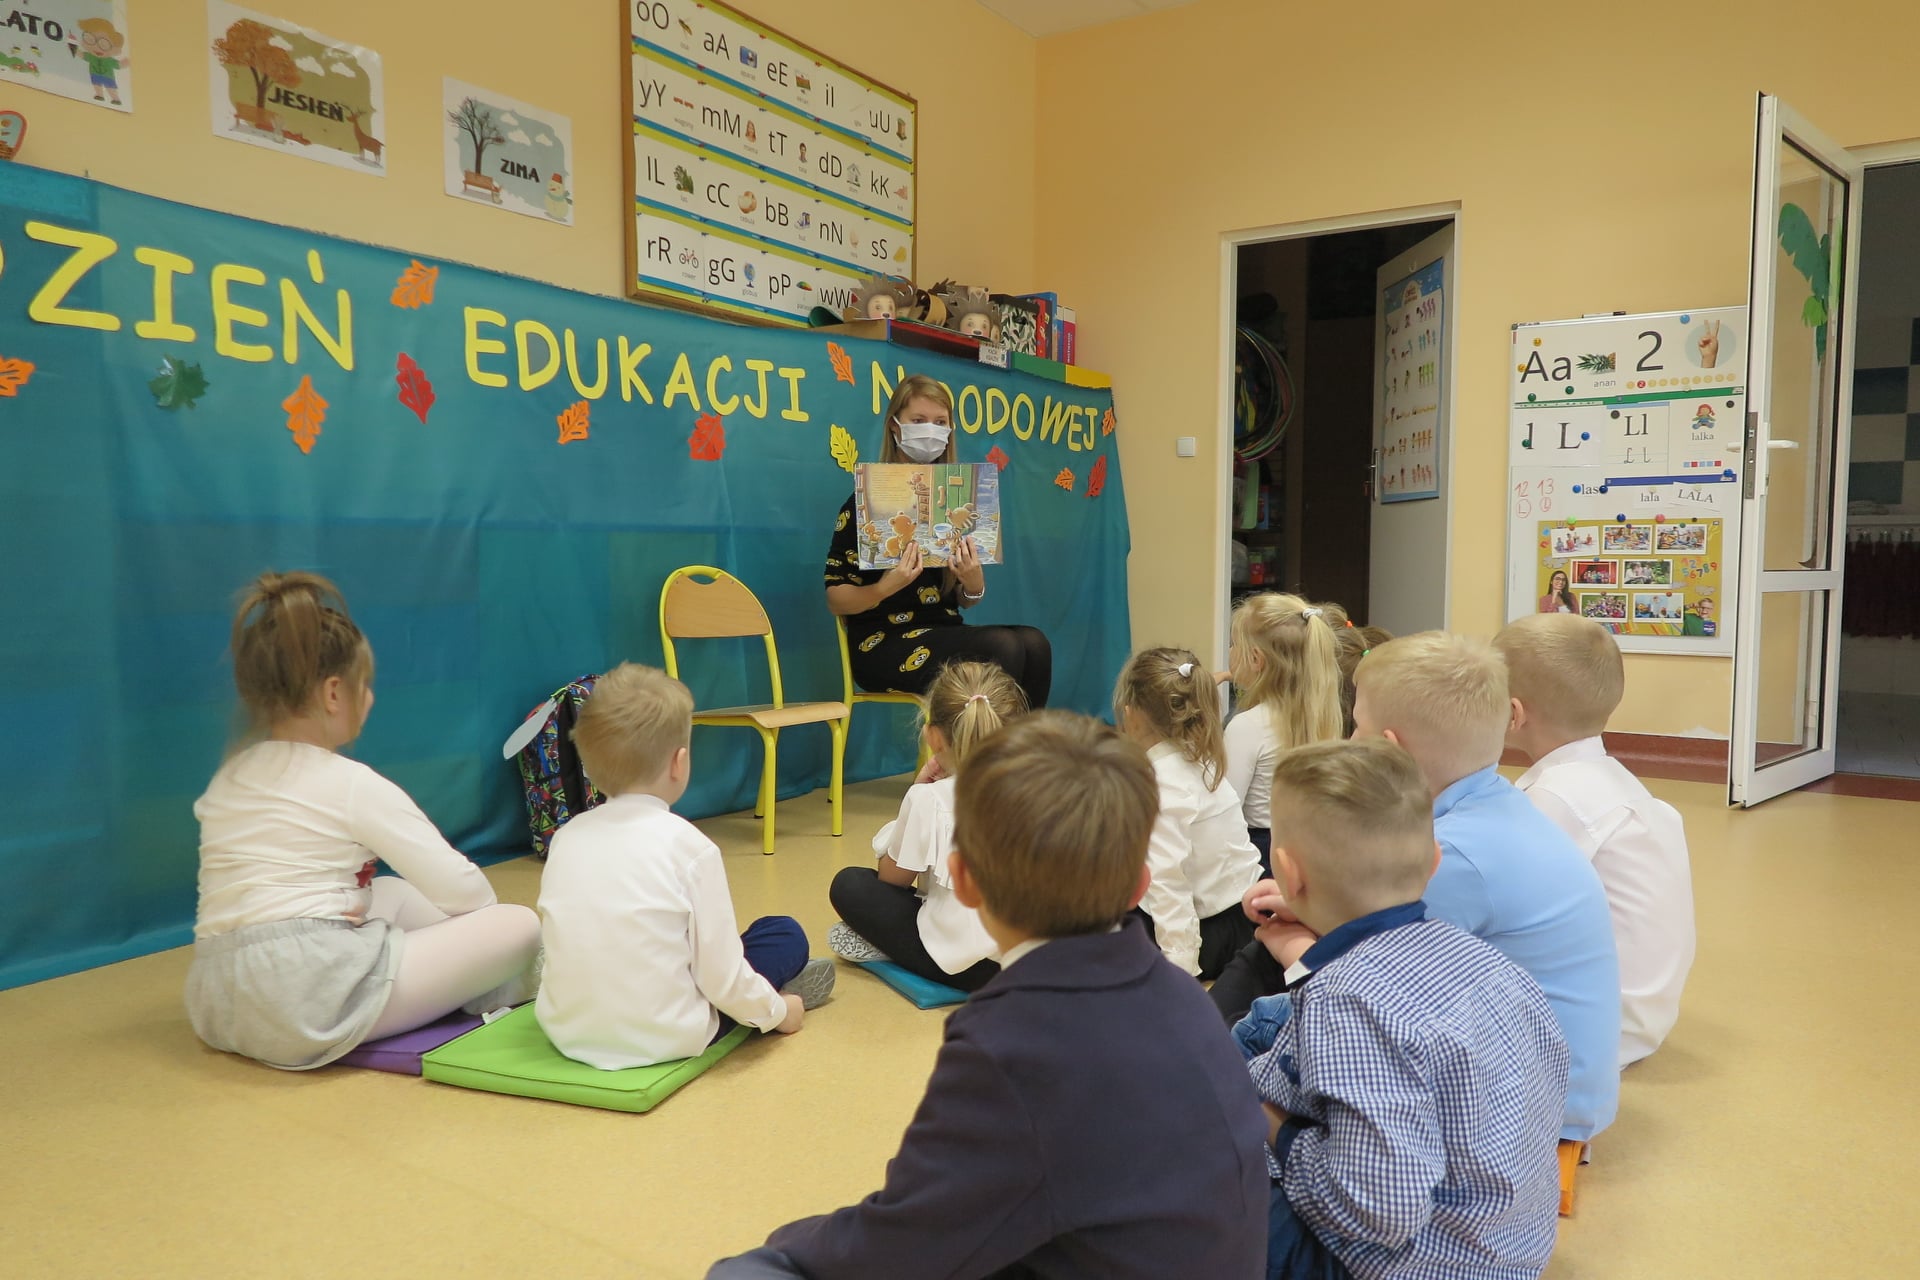 Sala przedszkolna, grupa dzieci siedzi na ziemi dookoła bibliotekarki, która trzyma w dłoni książkę odwróconą obrazkami w stronę dzieci. Bibliotekarka siedzi na krześle na twarzy ma maseczkę ochronną. 